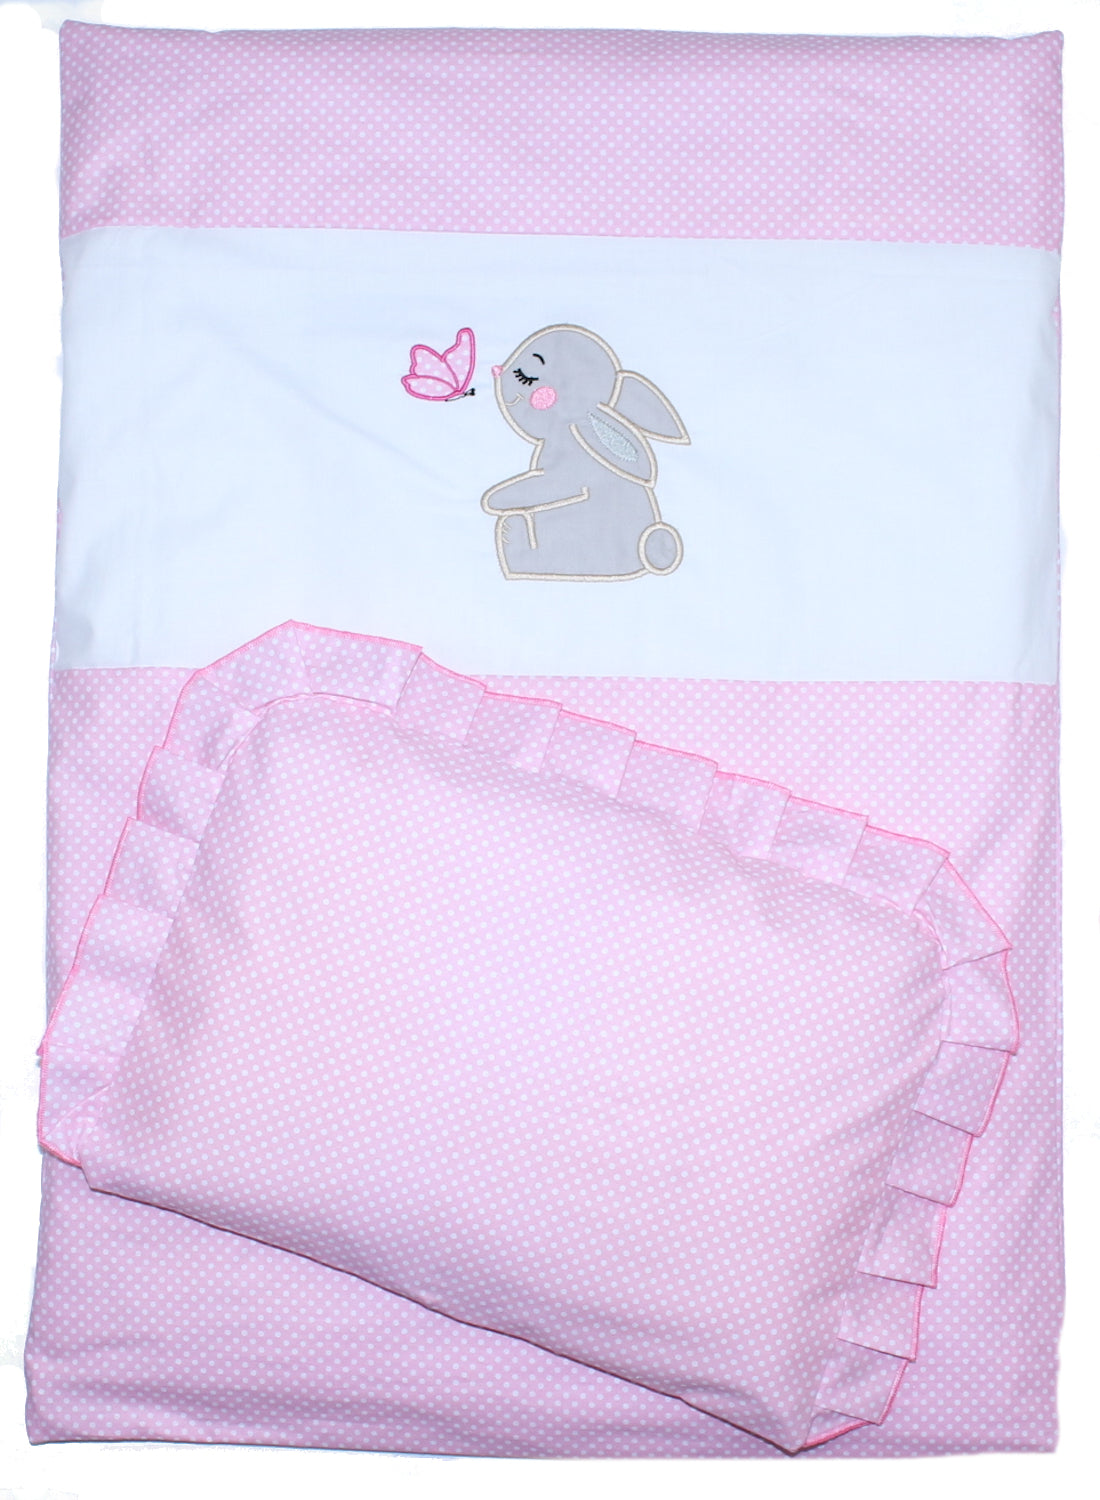 2- 4tlg Kinderwagenset - Hase- Punkten Rosa - Bettwäsche für Kinderwagen Bezüge Decke Kissen